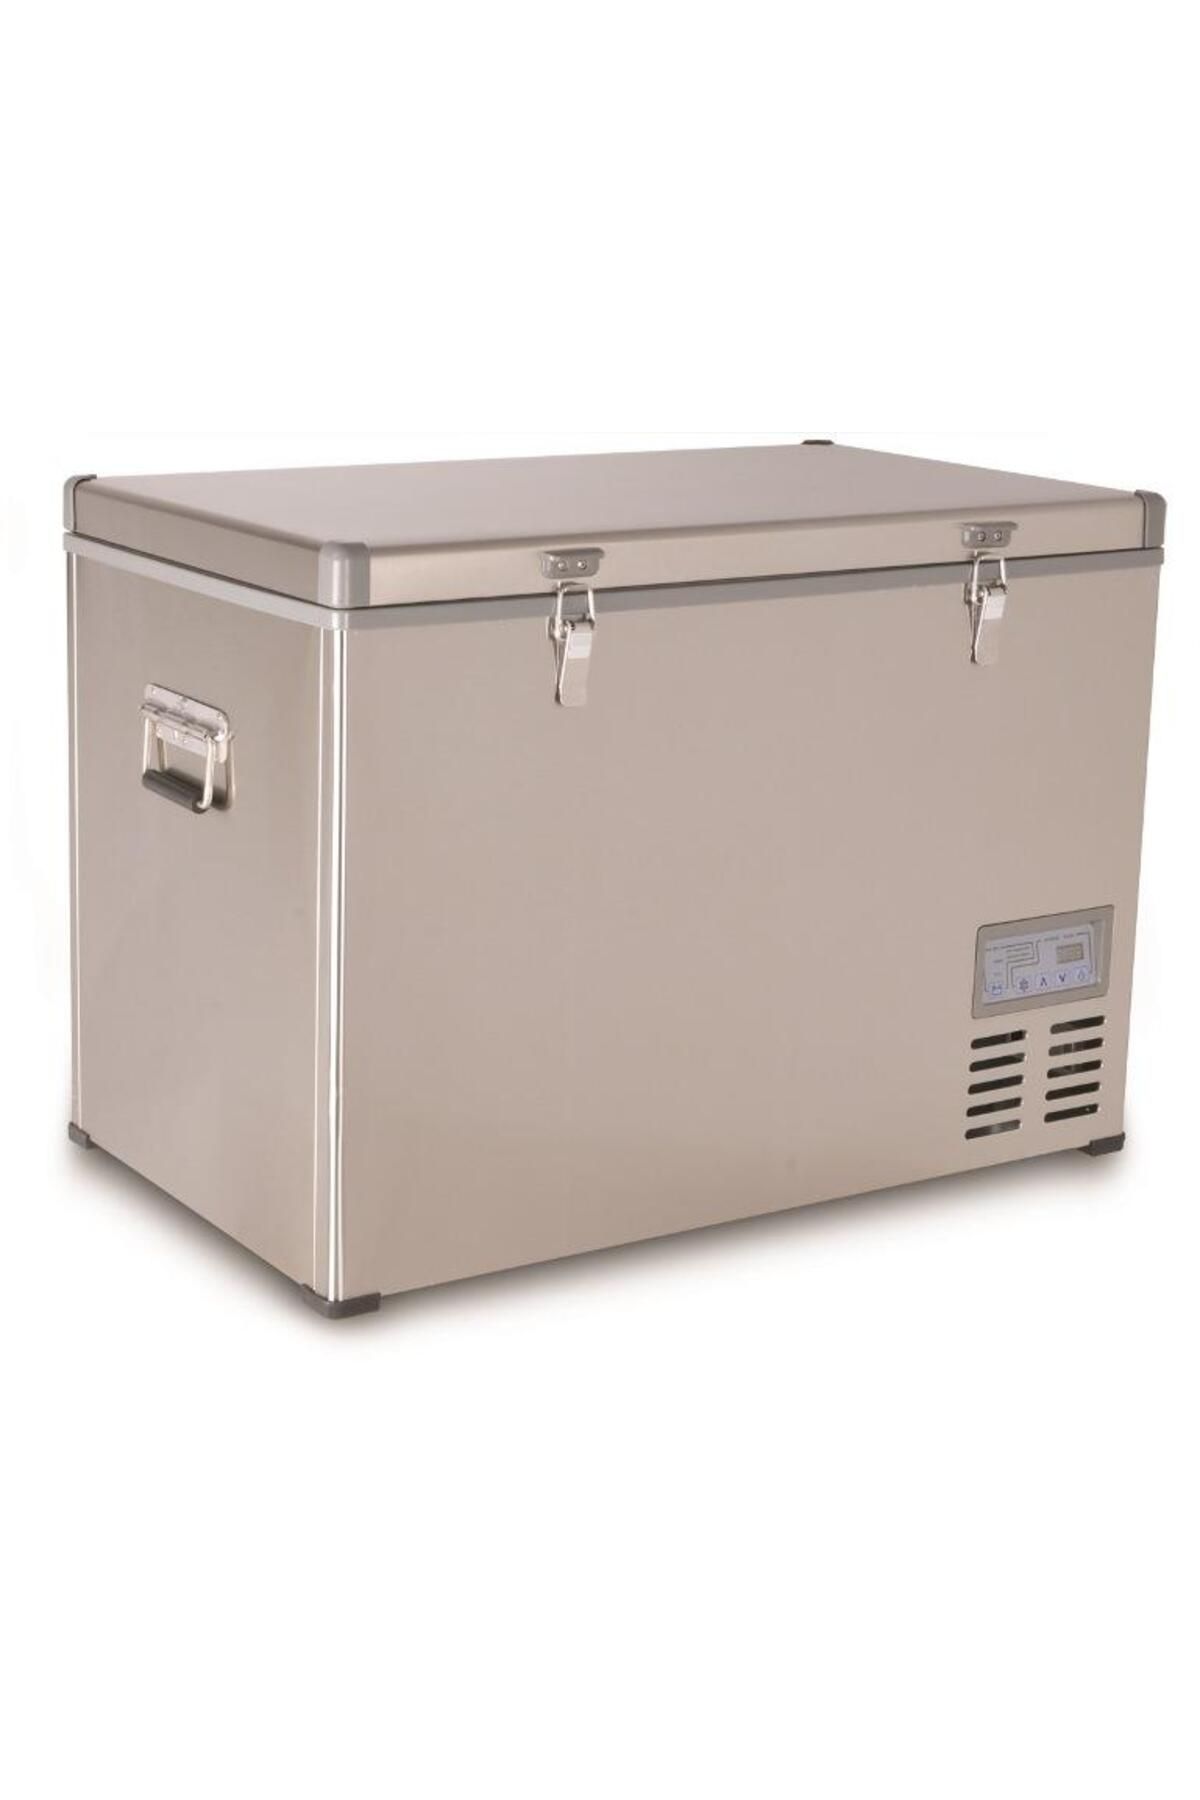 Icepeak Danfo 100 Kompresörlü Buzdolabı 98 Litre